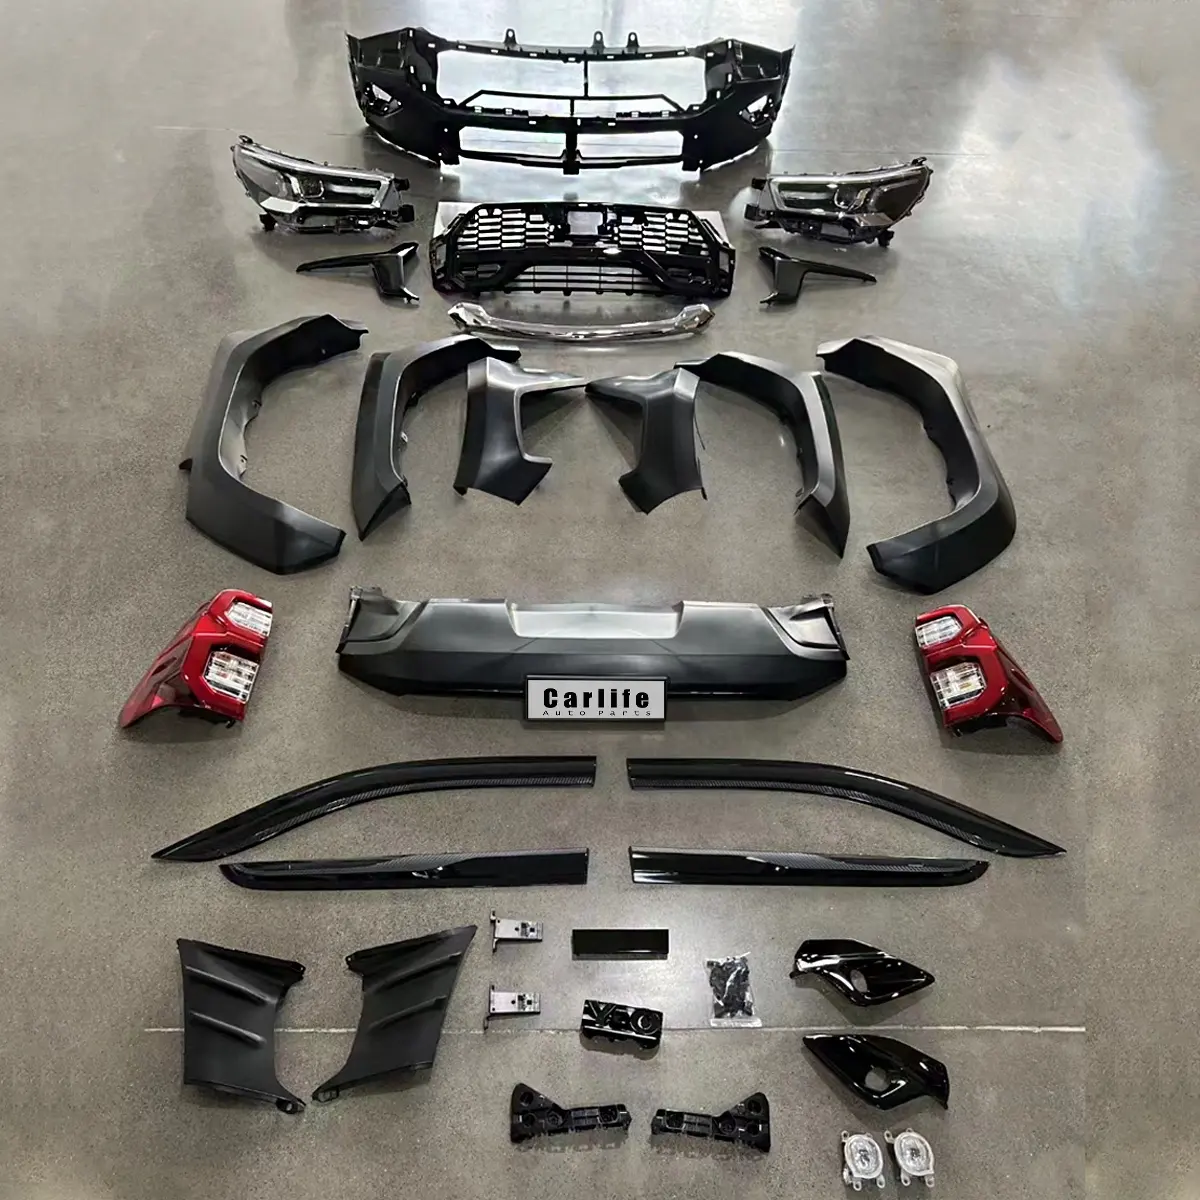 Pickup LKW Zubehör Hilux Upgrade Karosserie-Kits GR Sport geeignet für Toyota Hilux Revo Rocco Jahr